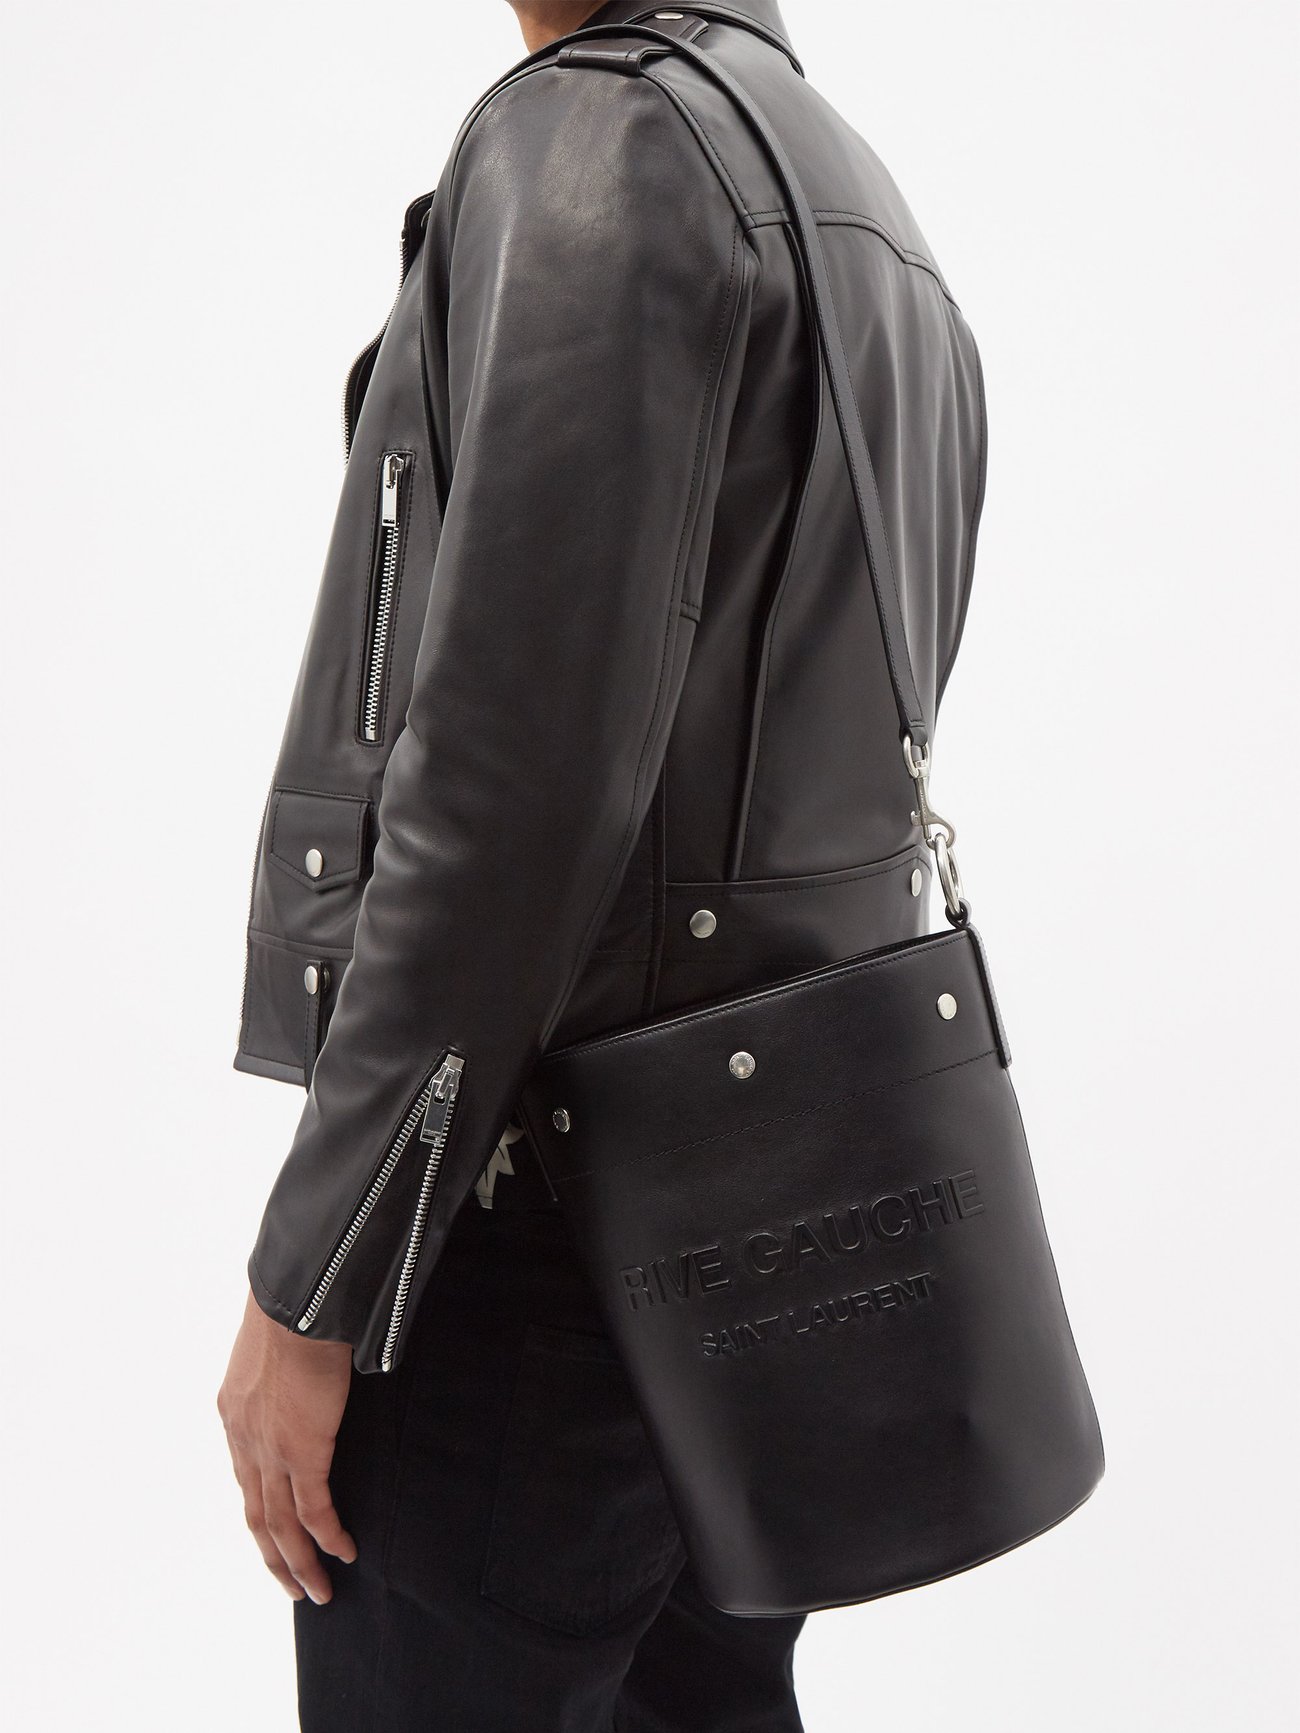 Black Rive Gauche leather bucket bag, Saint Laurent